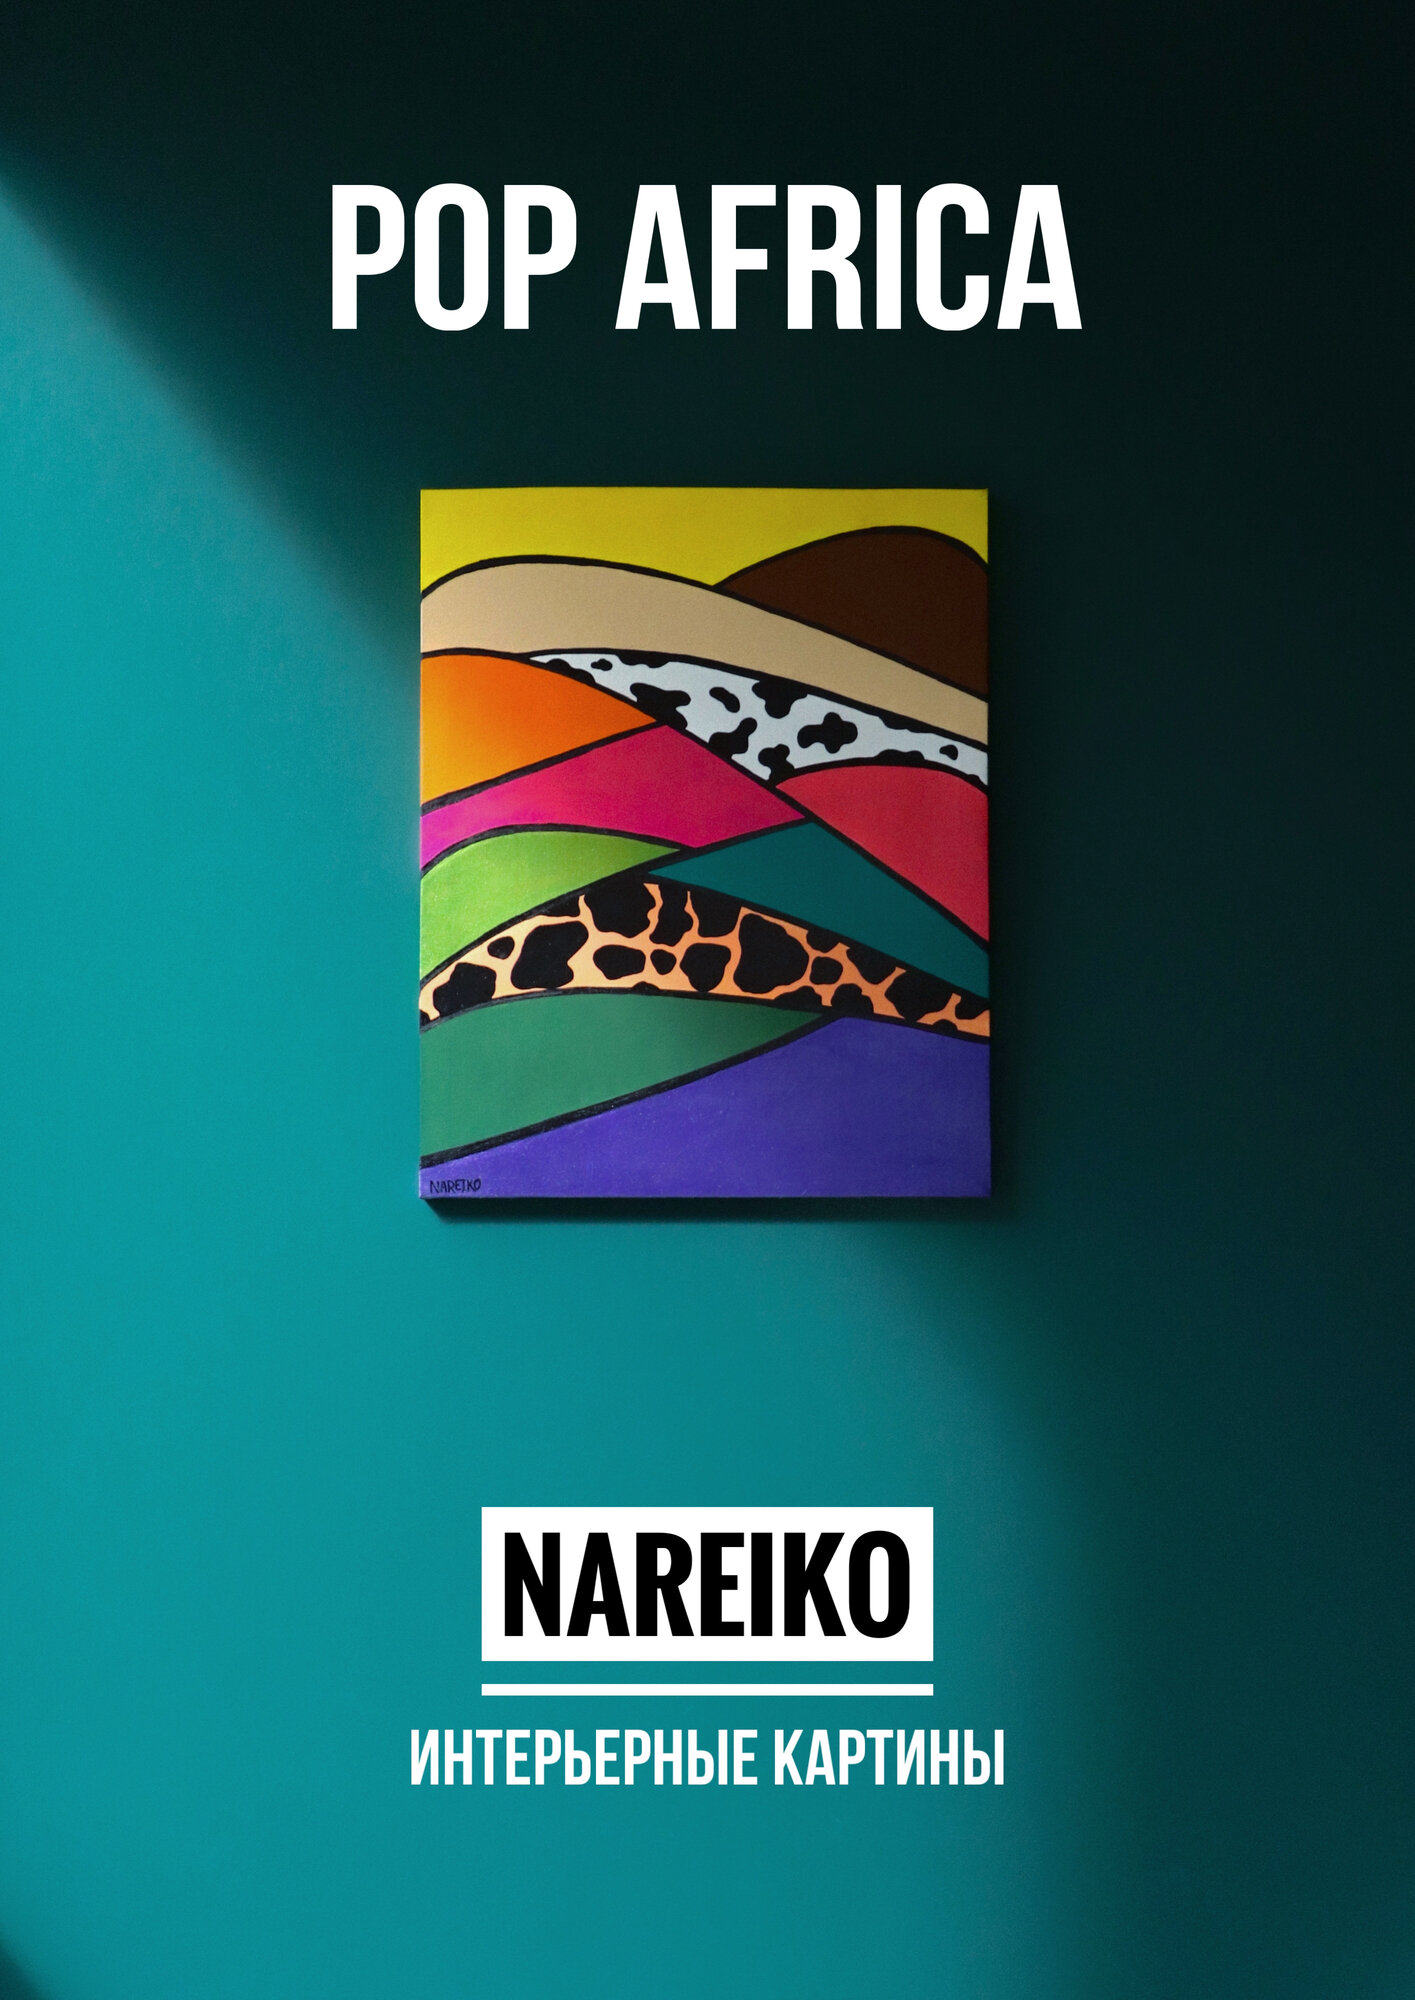 Картина "Pop - Аfrica" от NAREIKO, размер 40 x 50 см